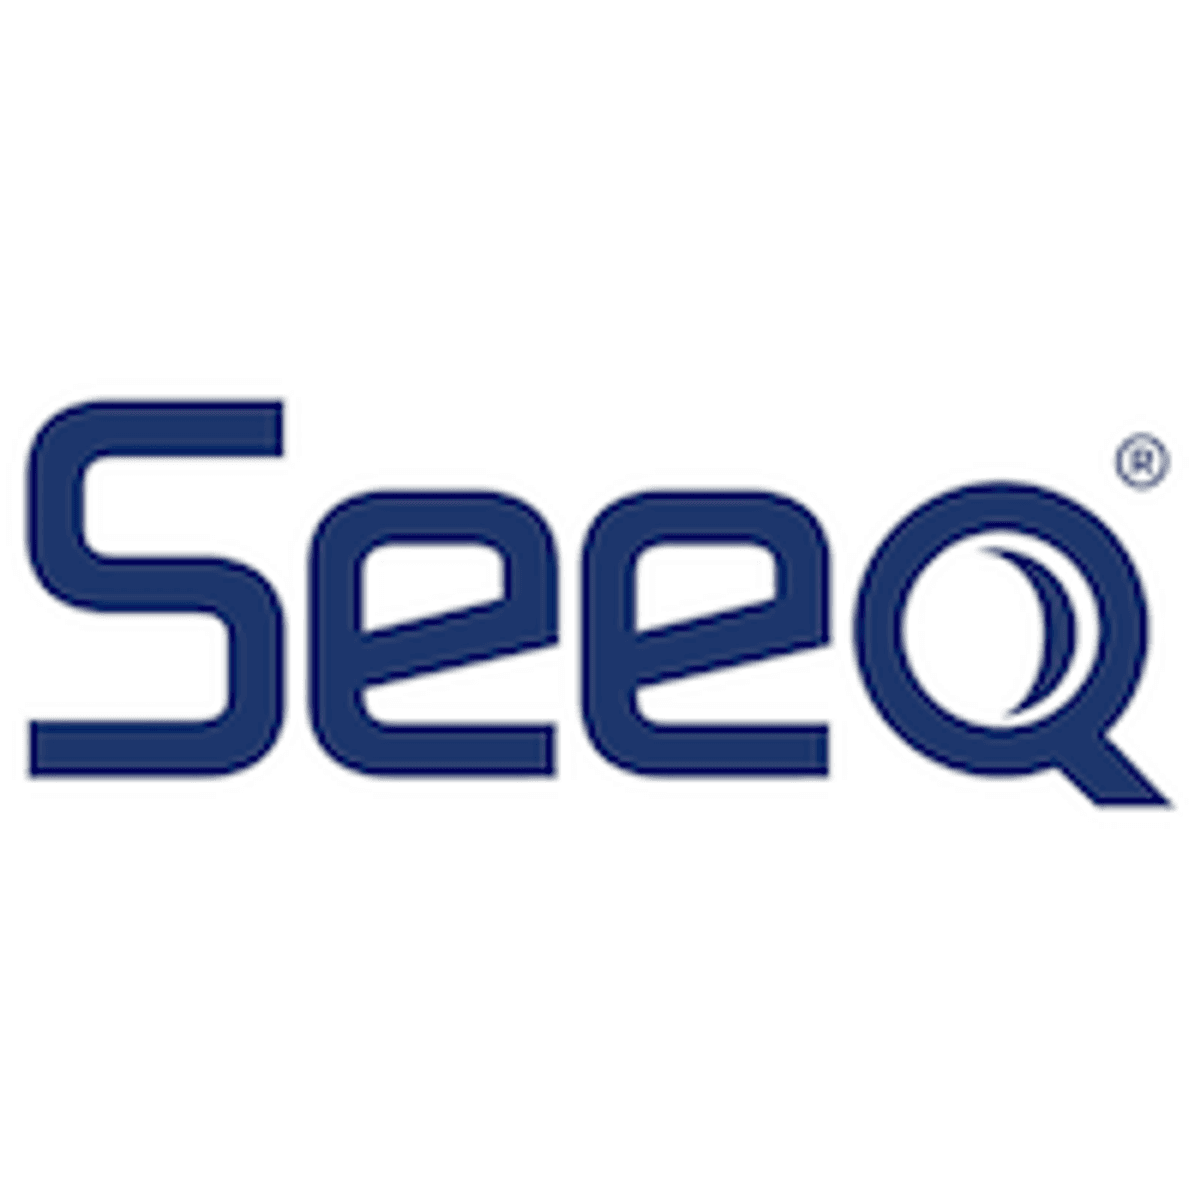 Seeq stelt R22 en bètaversie van Seeq Data Lab beschikbaar image